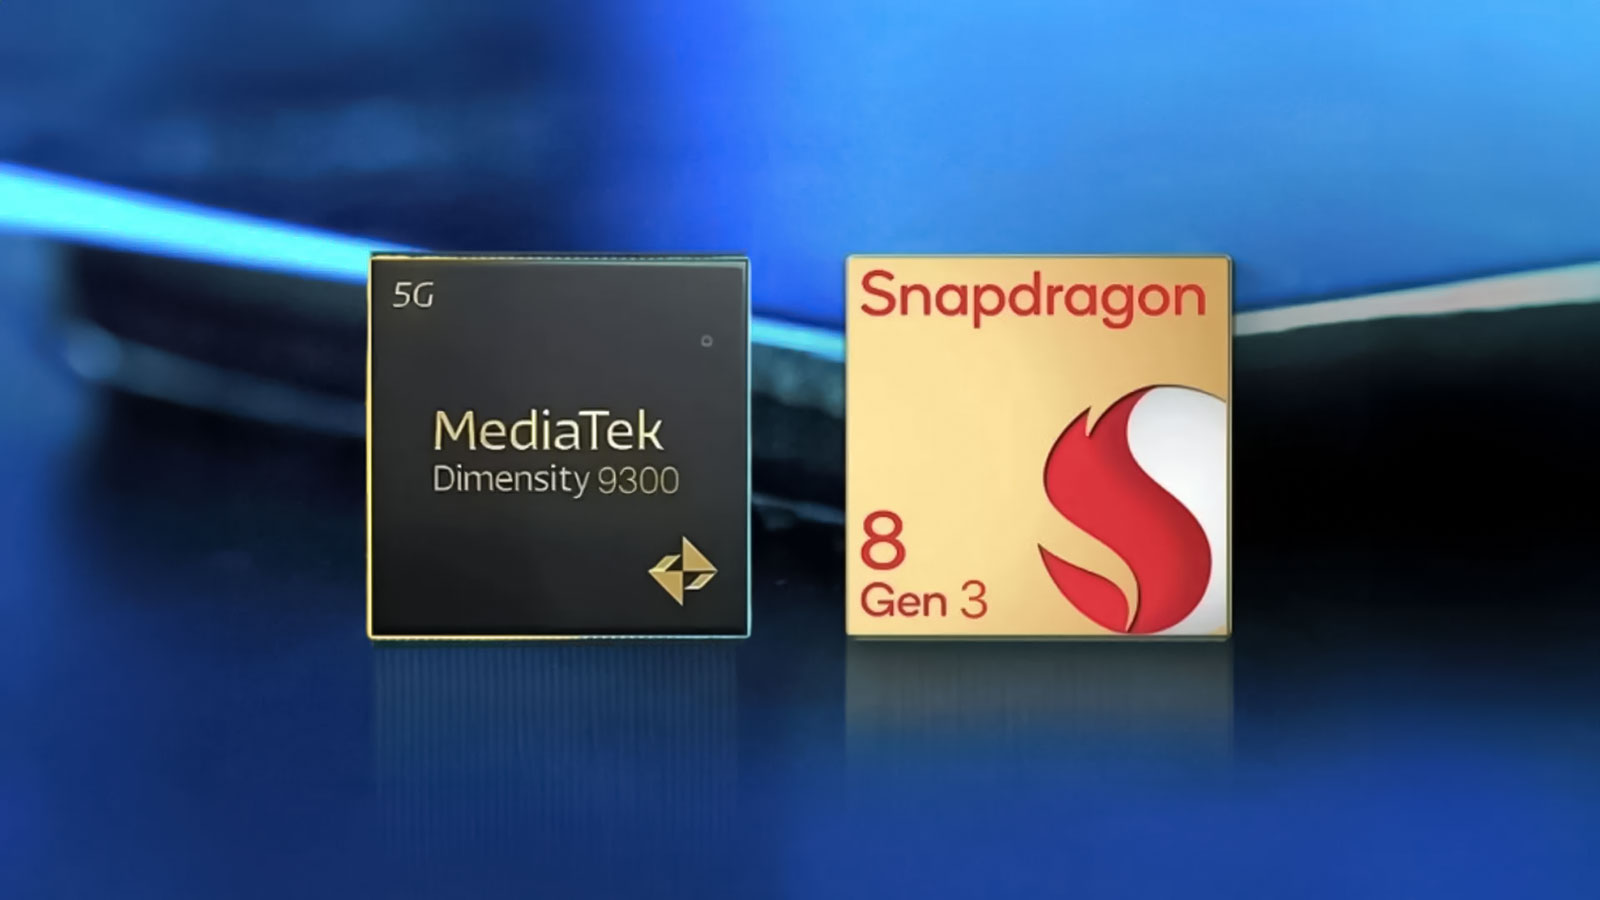 قدرت پردازشی مدیاتک Dimensity 9300 حتی با افت شدید هم از Snapdragon 8 Gen 3 بالاتر است؟